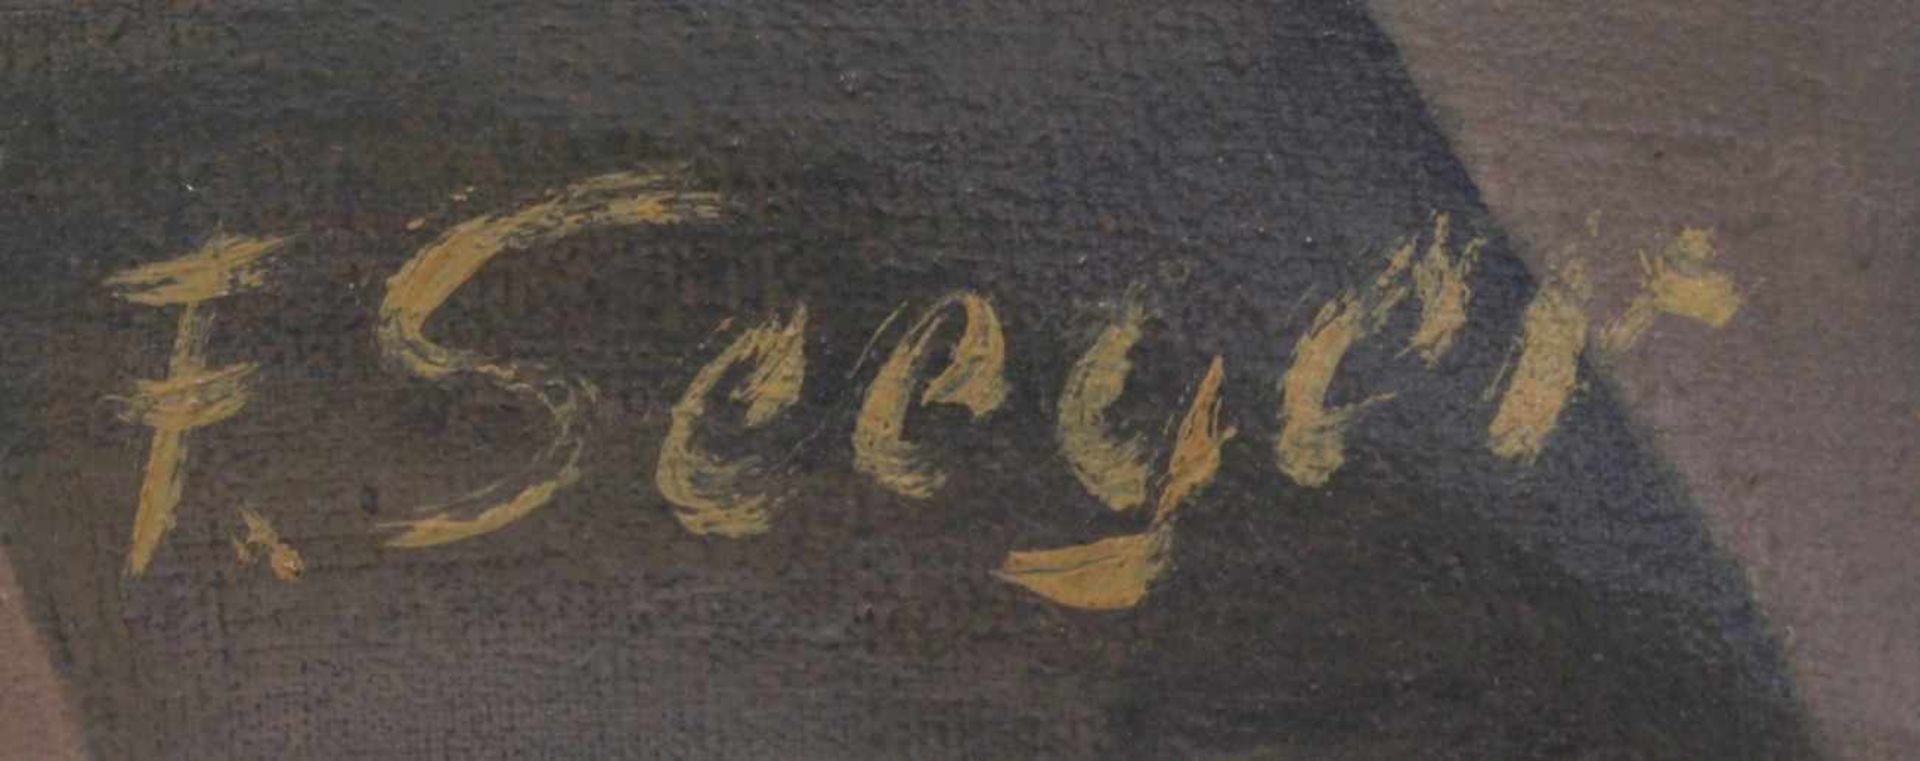 Seeger, F., dt. Maler Mitte 20. Jh. "Figurenszene in der Stube", sign., Öl/Lw., 57 x 45 cm< - Bild 2 aus 2